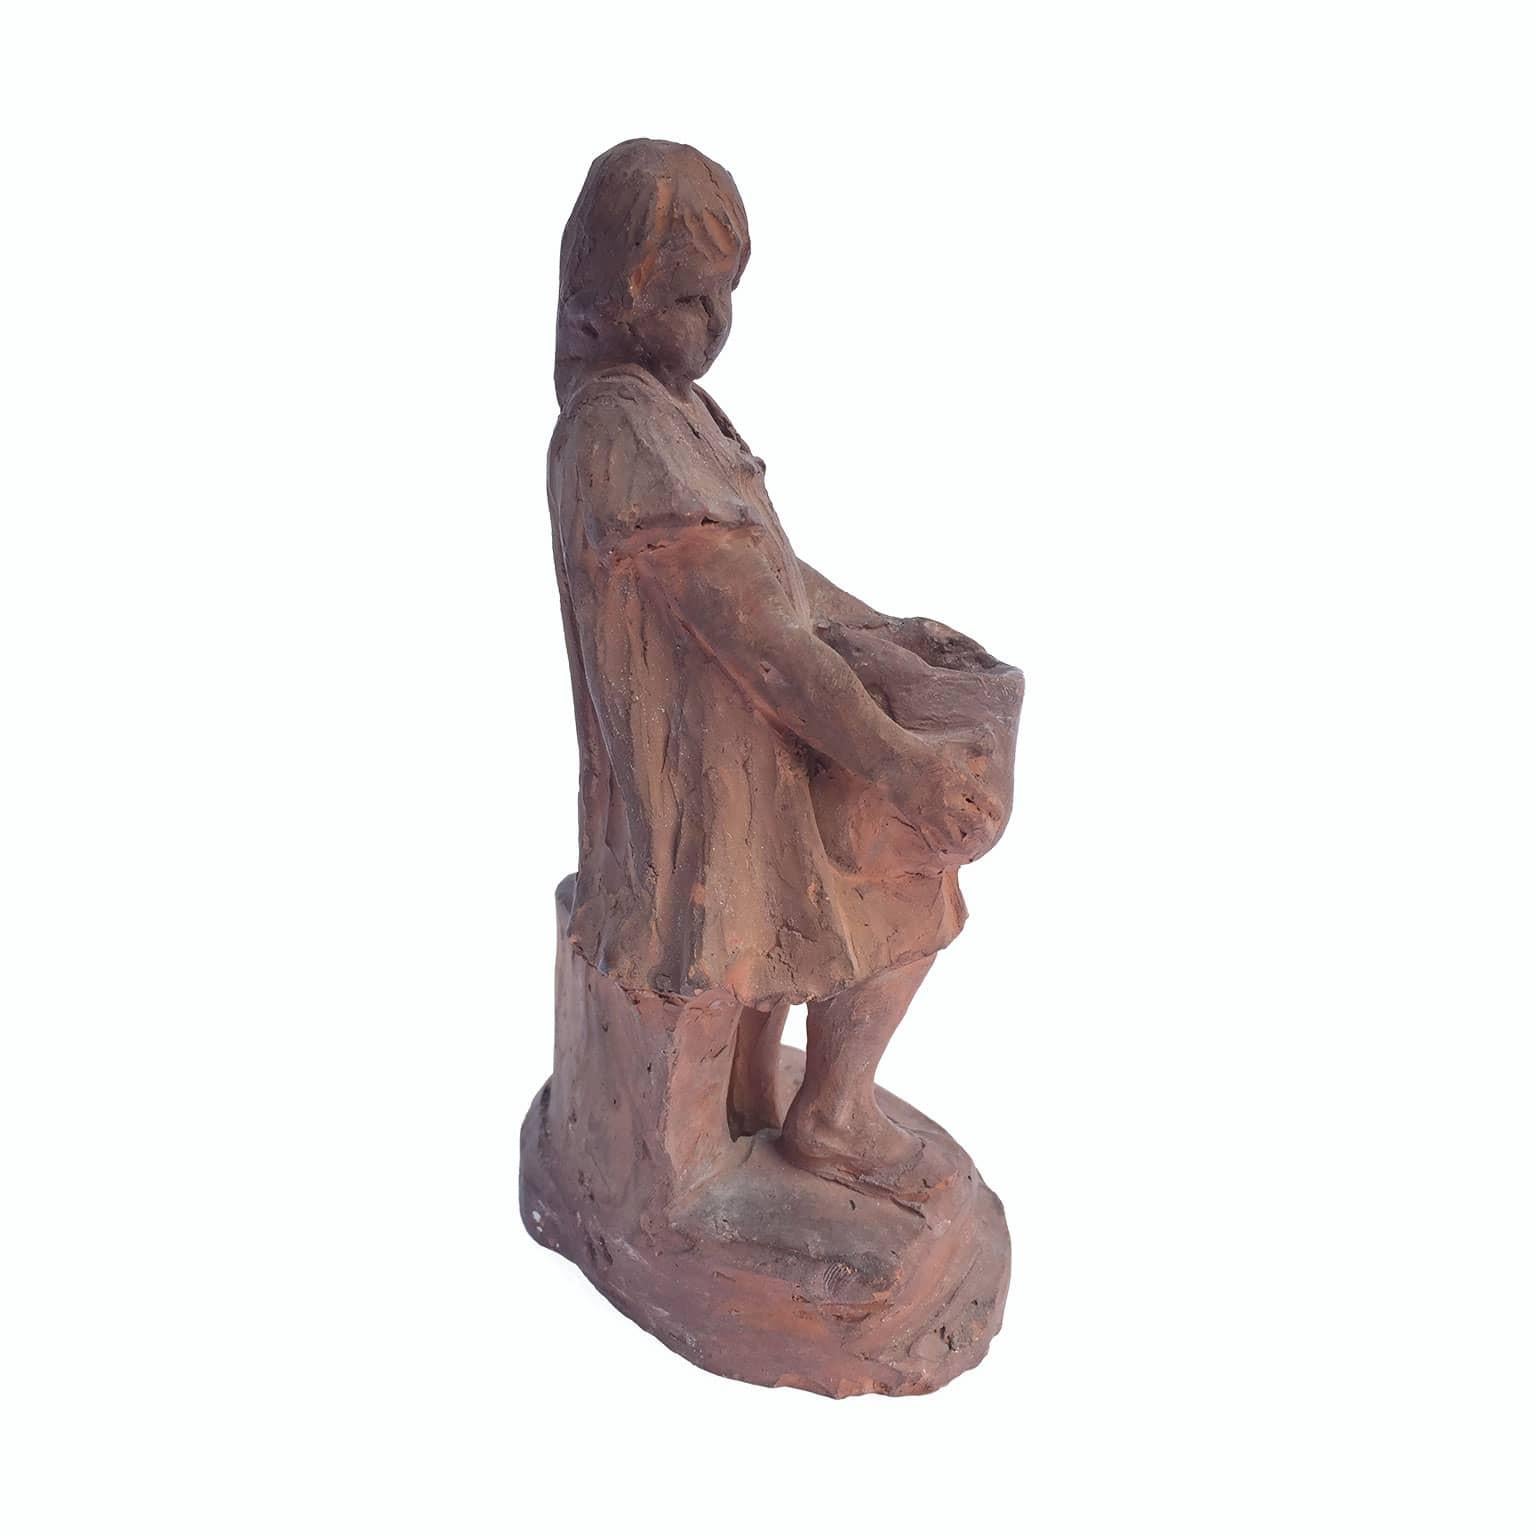 Sculpture en terre cuite moulée du début du XXe siècle représentant une jeune fille avec un pot à eau.

Signé sur la base, G. Michieli,  par le sculpteur vénitien Guglielmo Michieli (1855-1944). Bien lié à l'âge  condition. Signes d'usure, petits